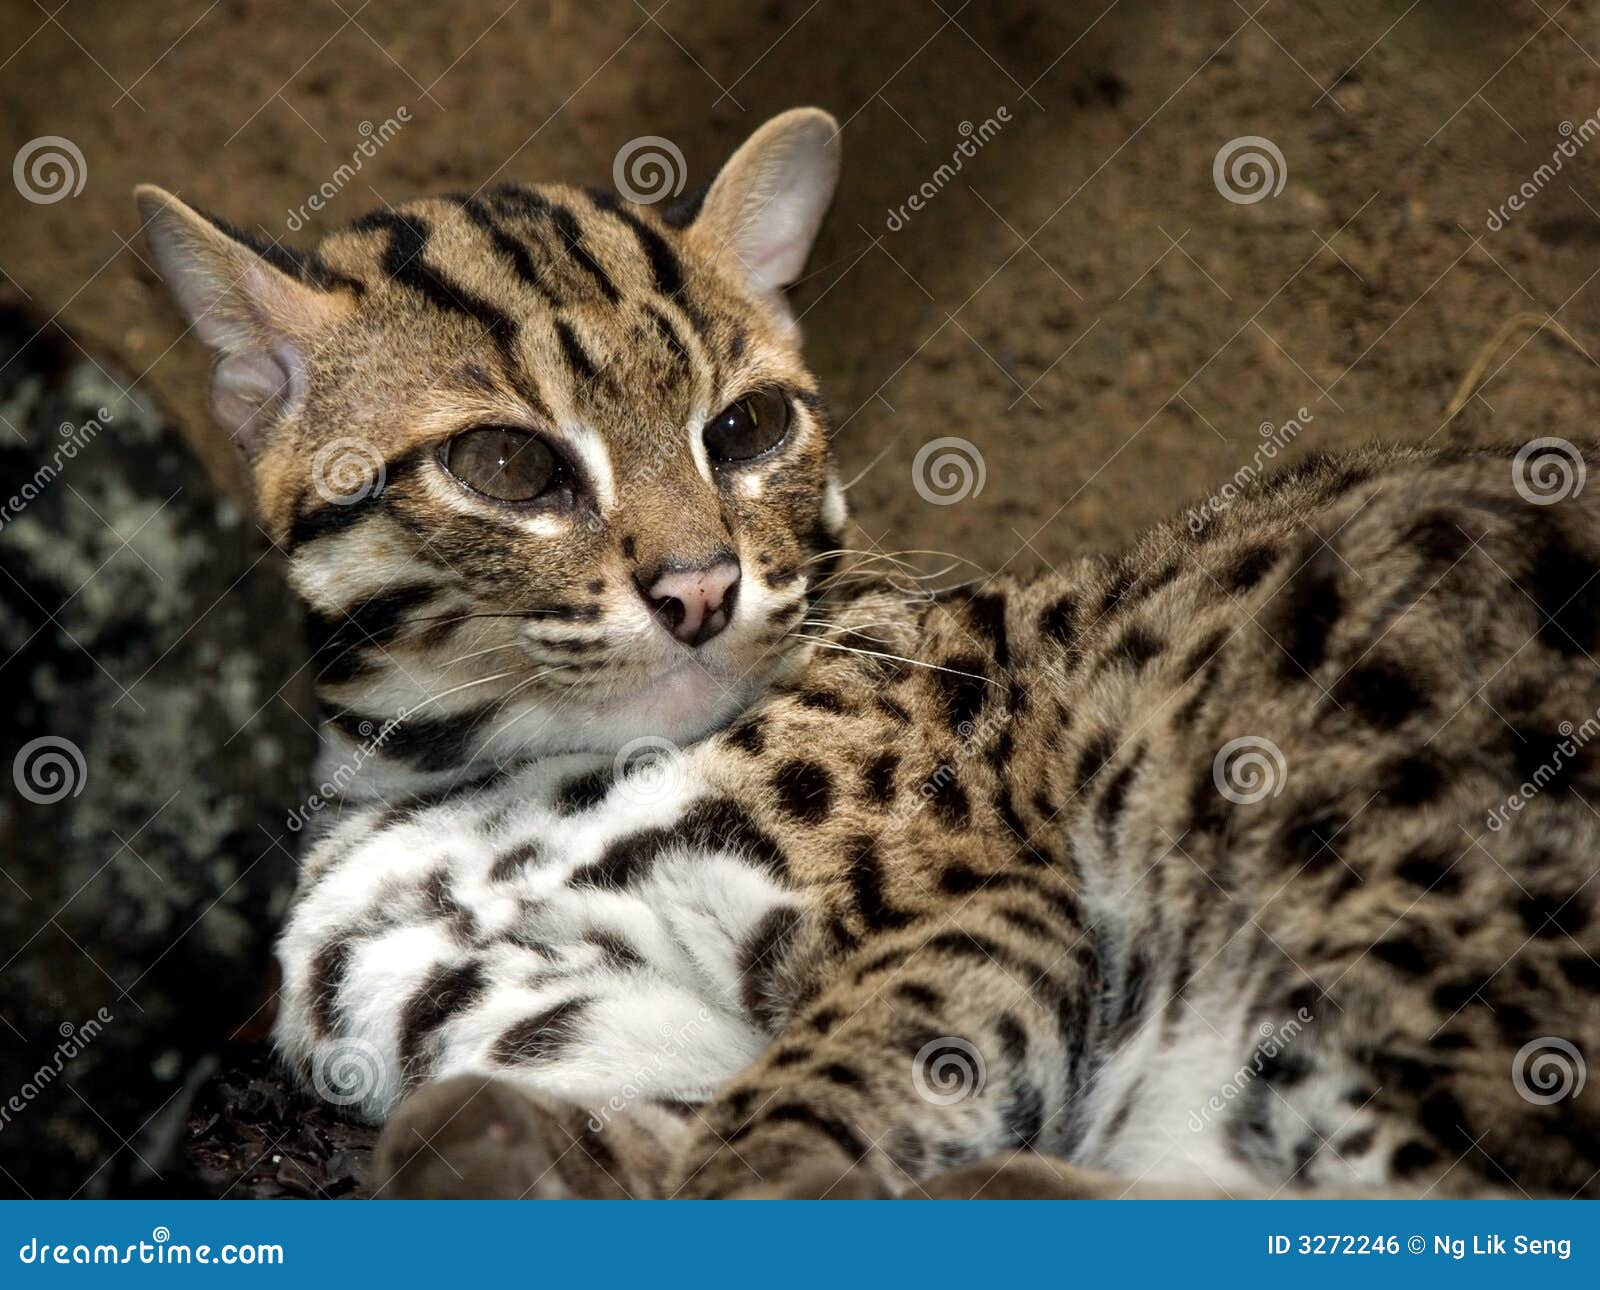 civet cat